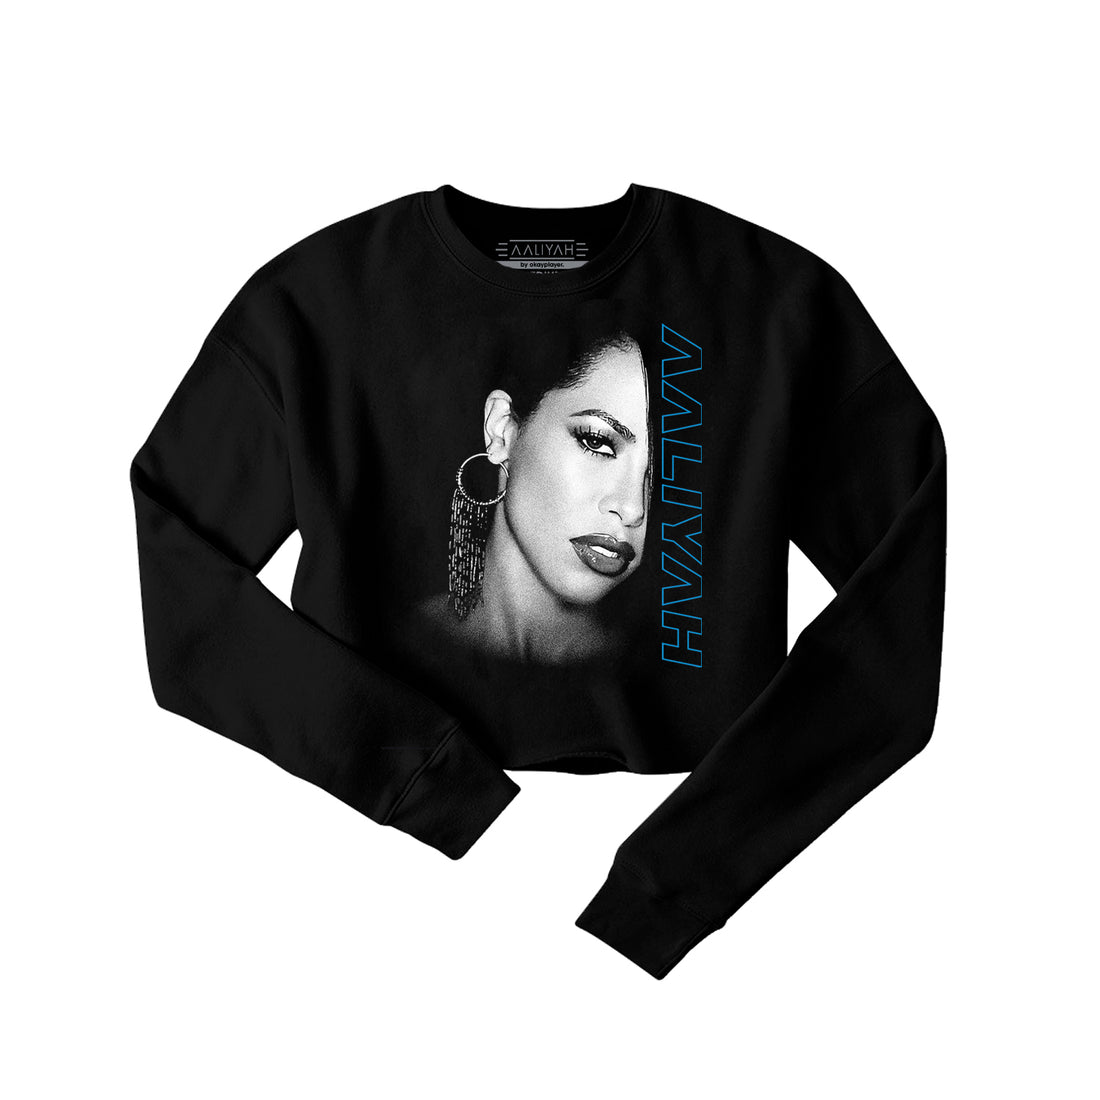 Aaliyah Profile Crop Crewneck Sweatshirt